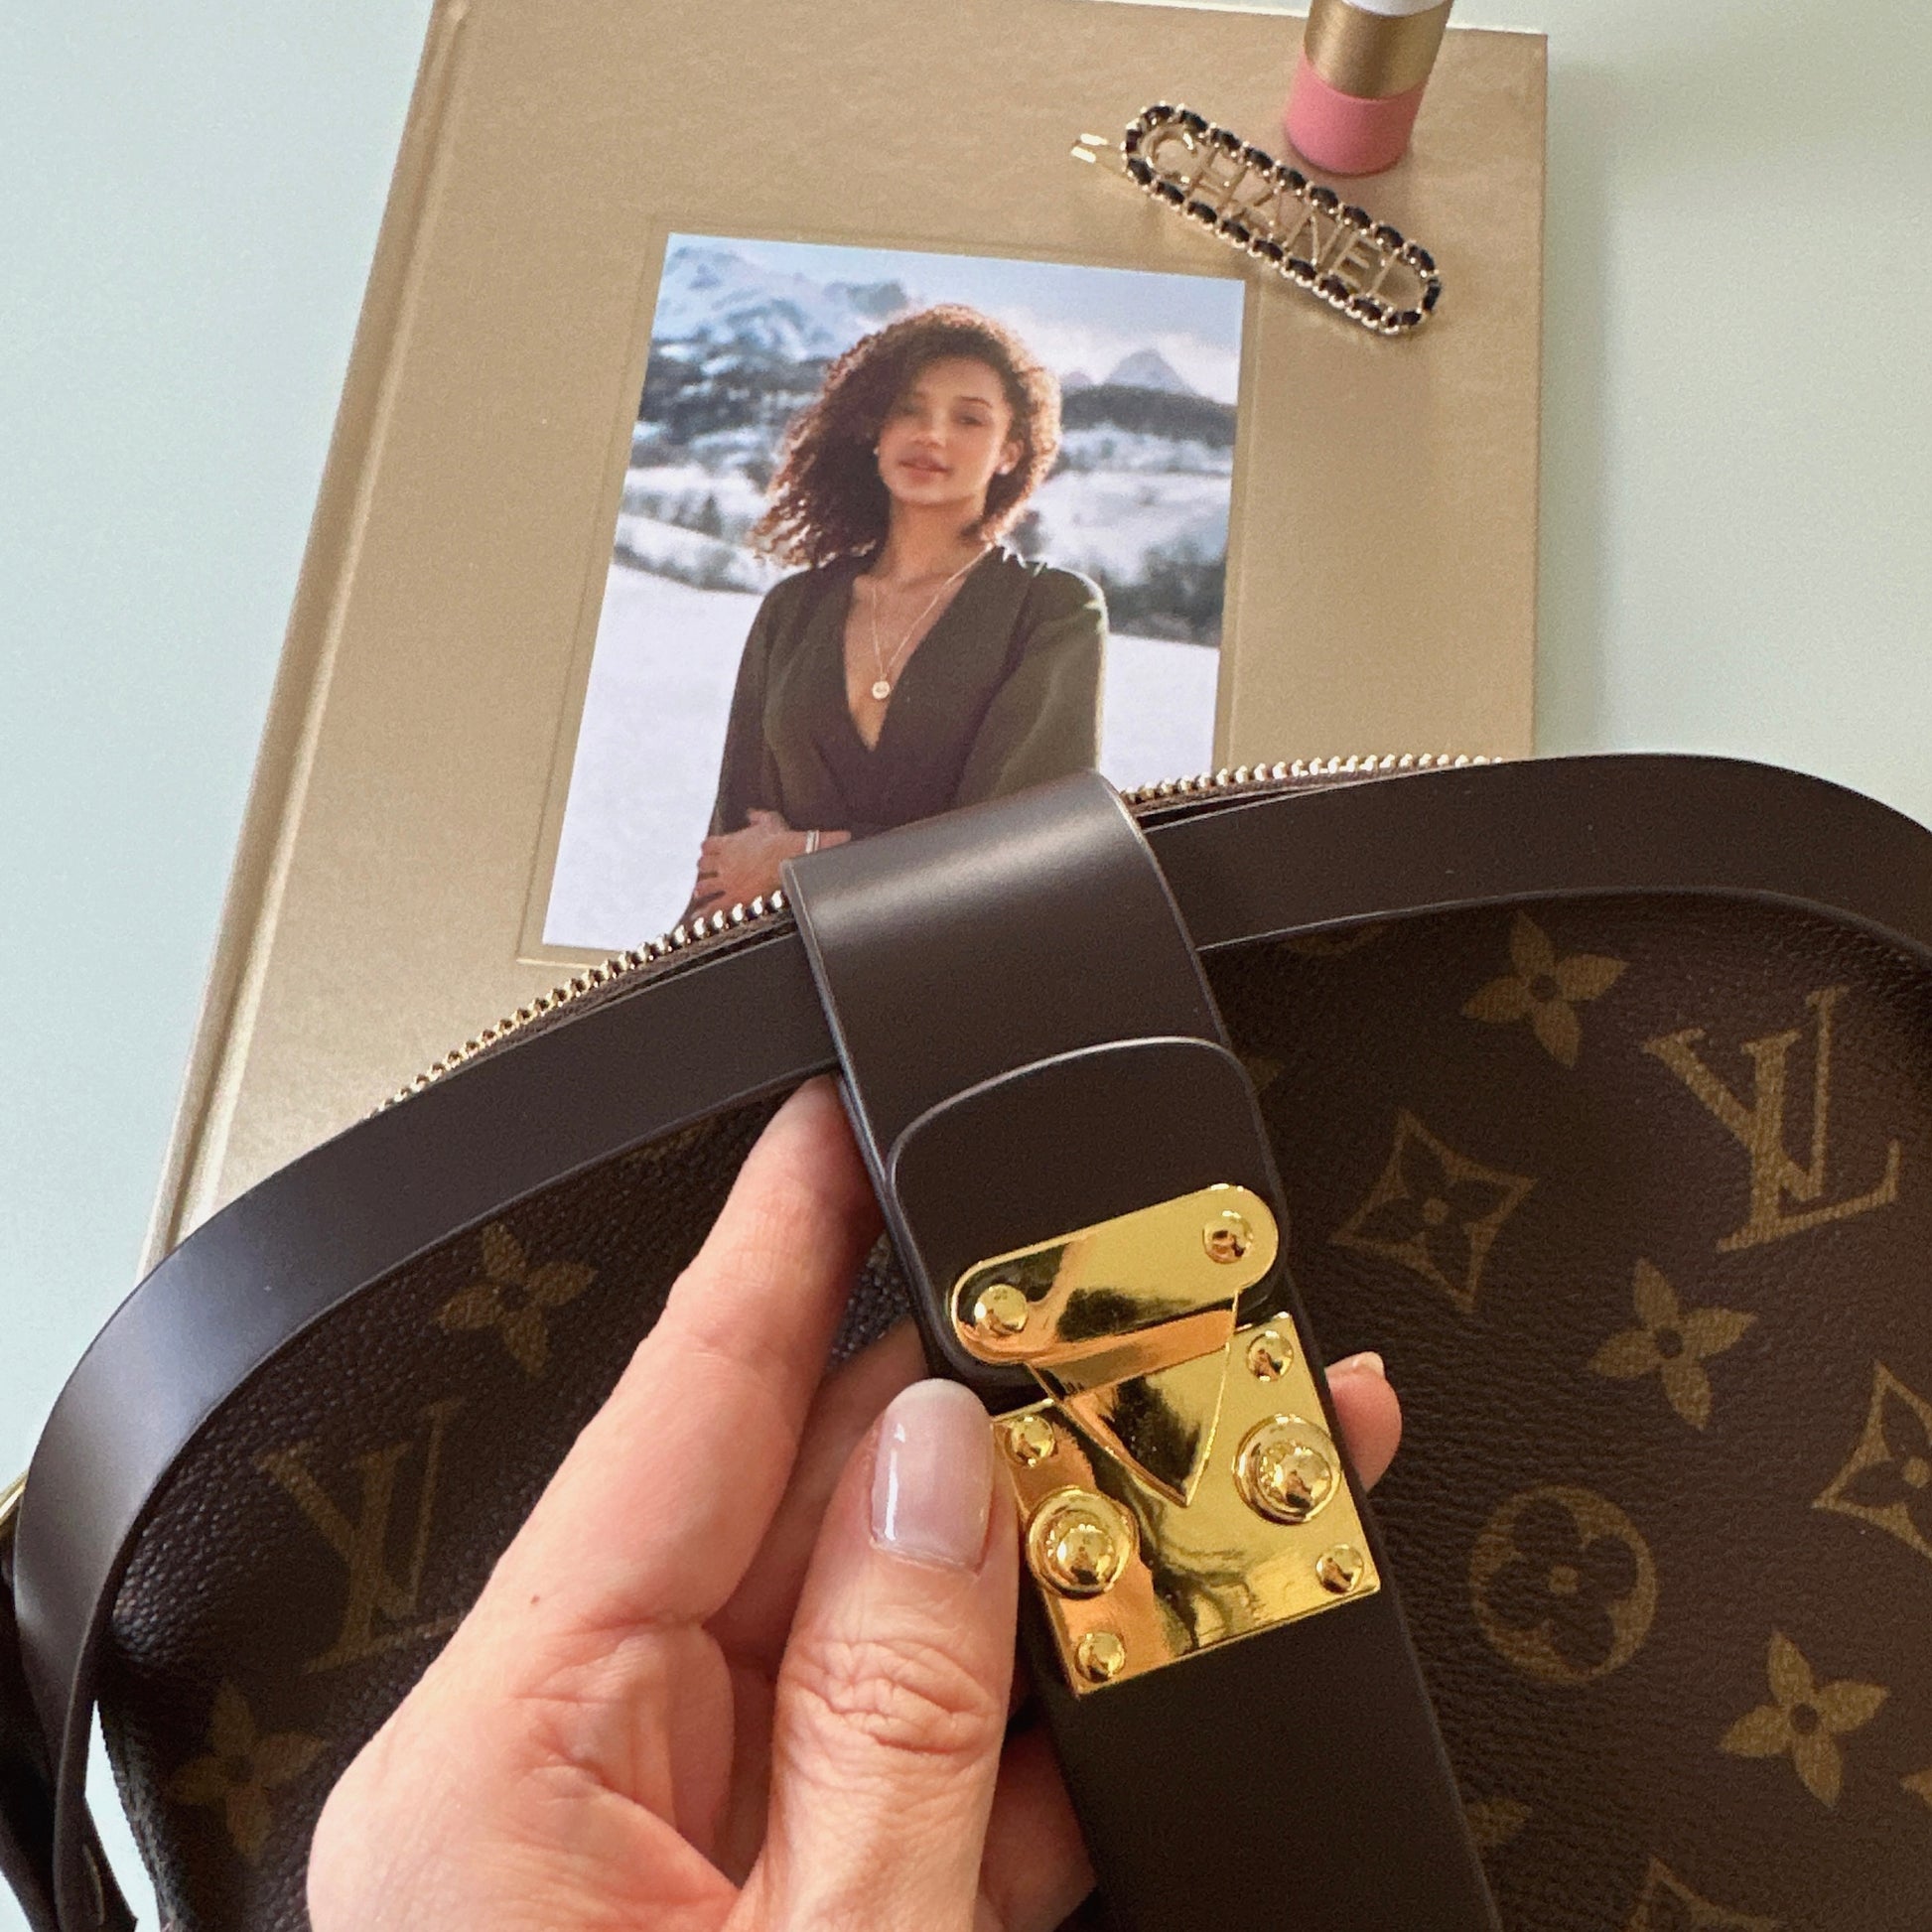 Enni's Collection Handbag Liners – Enni's Collection